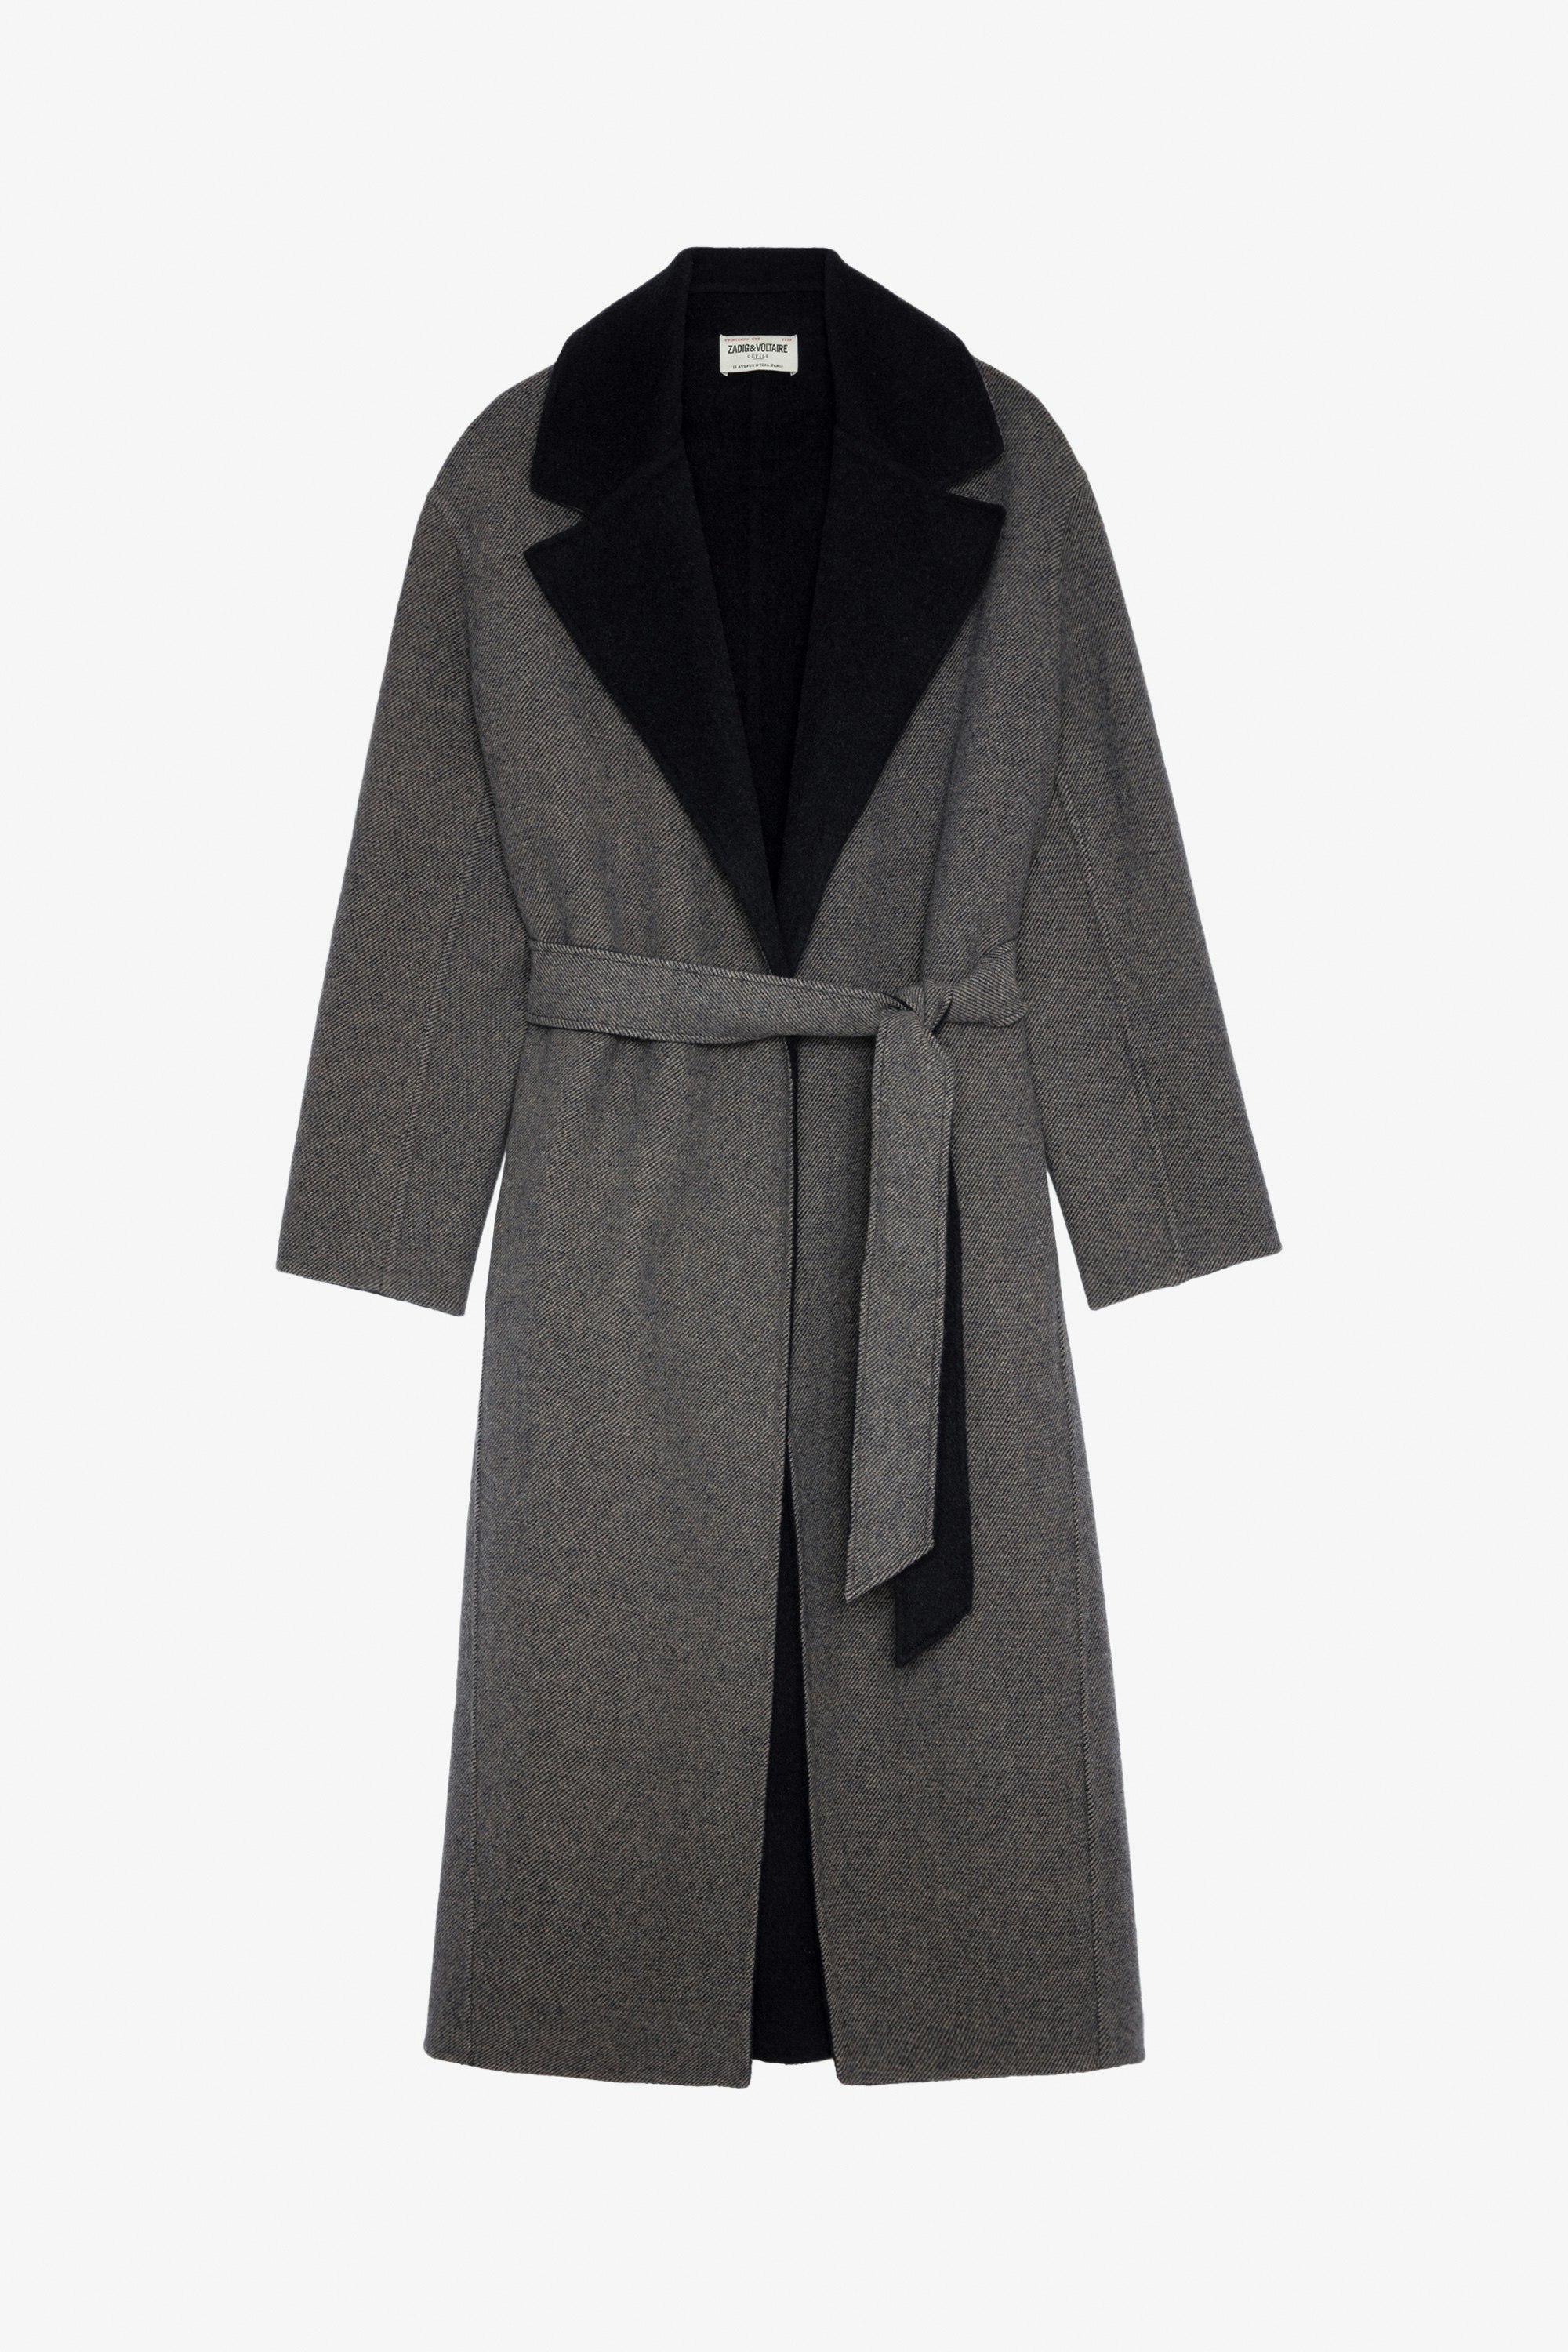 Mantel Meli - Langer Damen-Mantel aus Wolle in Schwarz mit Gürtel und farblich abgesetztem Kragen, Flügelmotiv auf der Rückseite